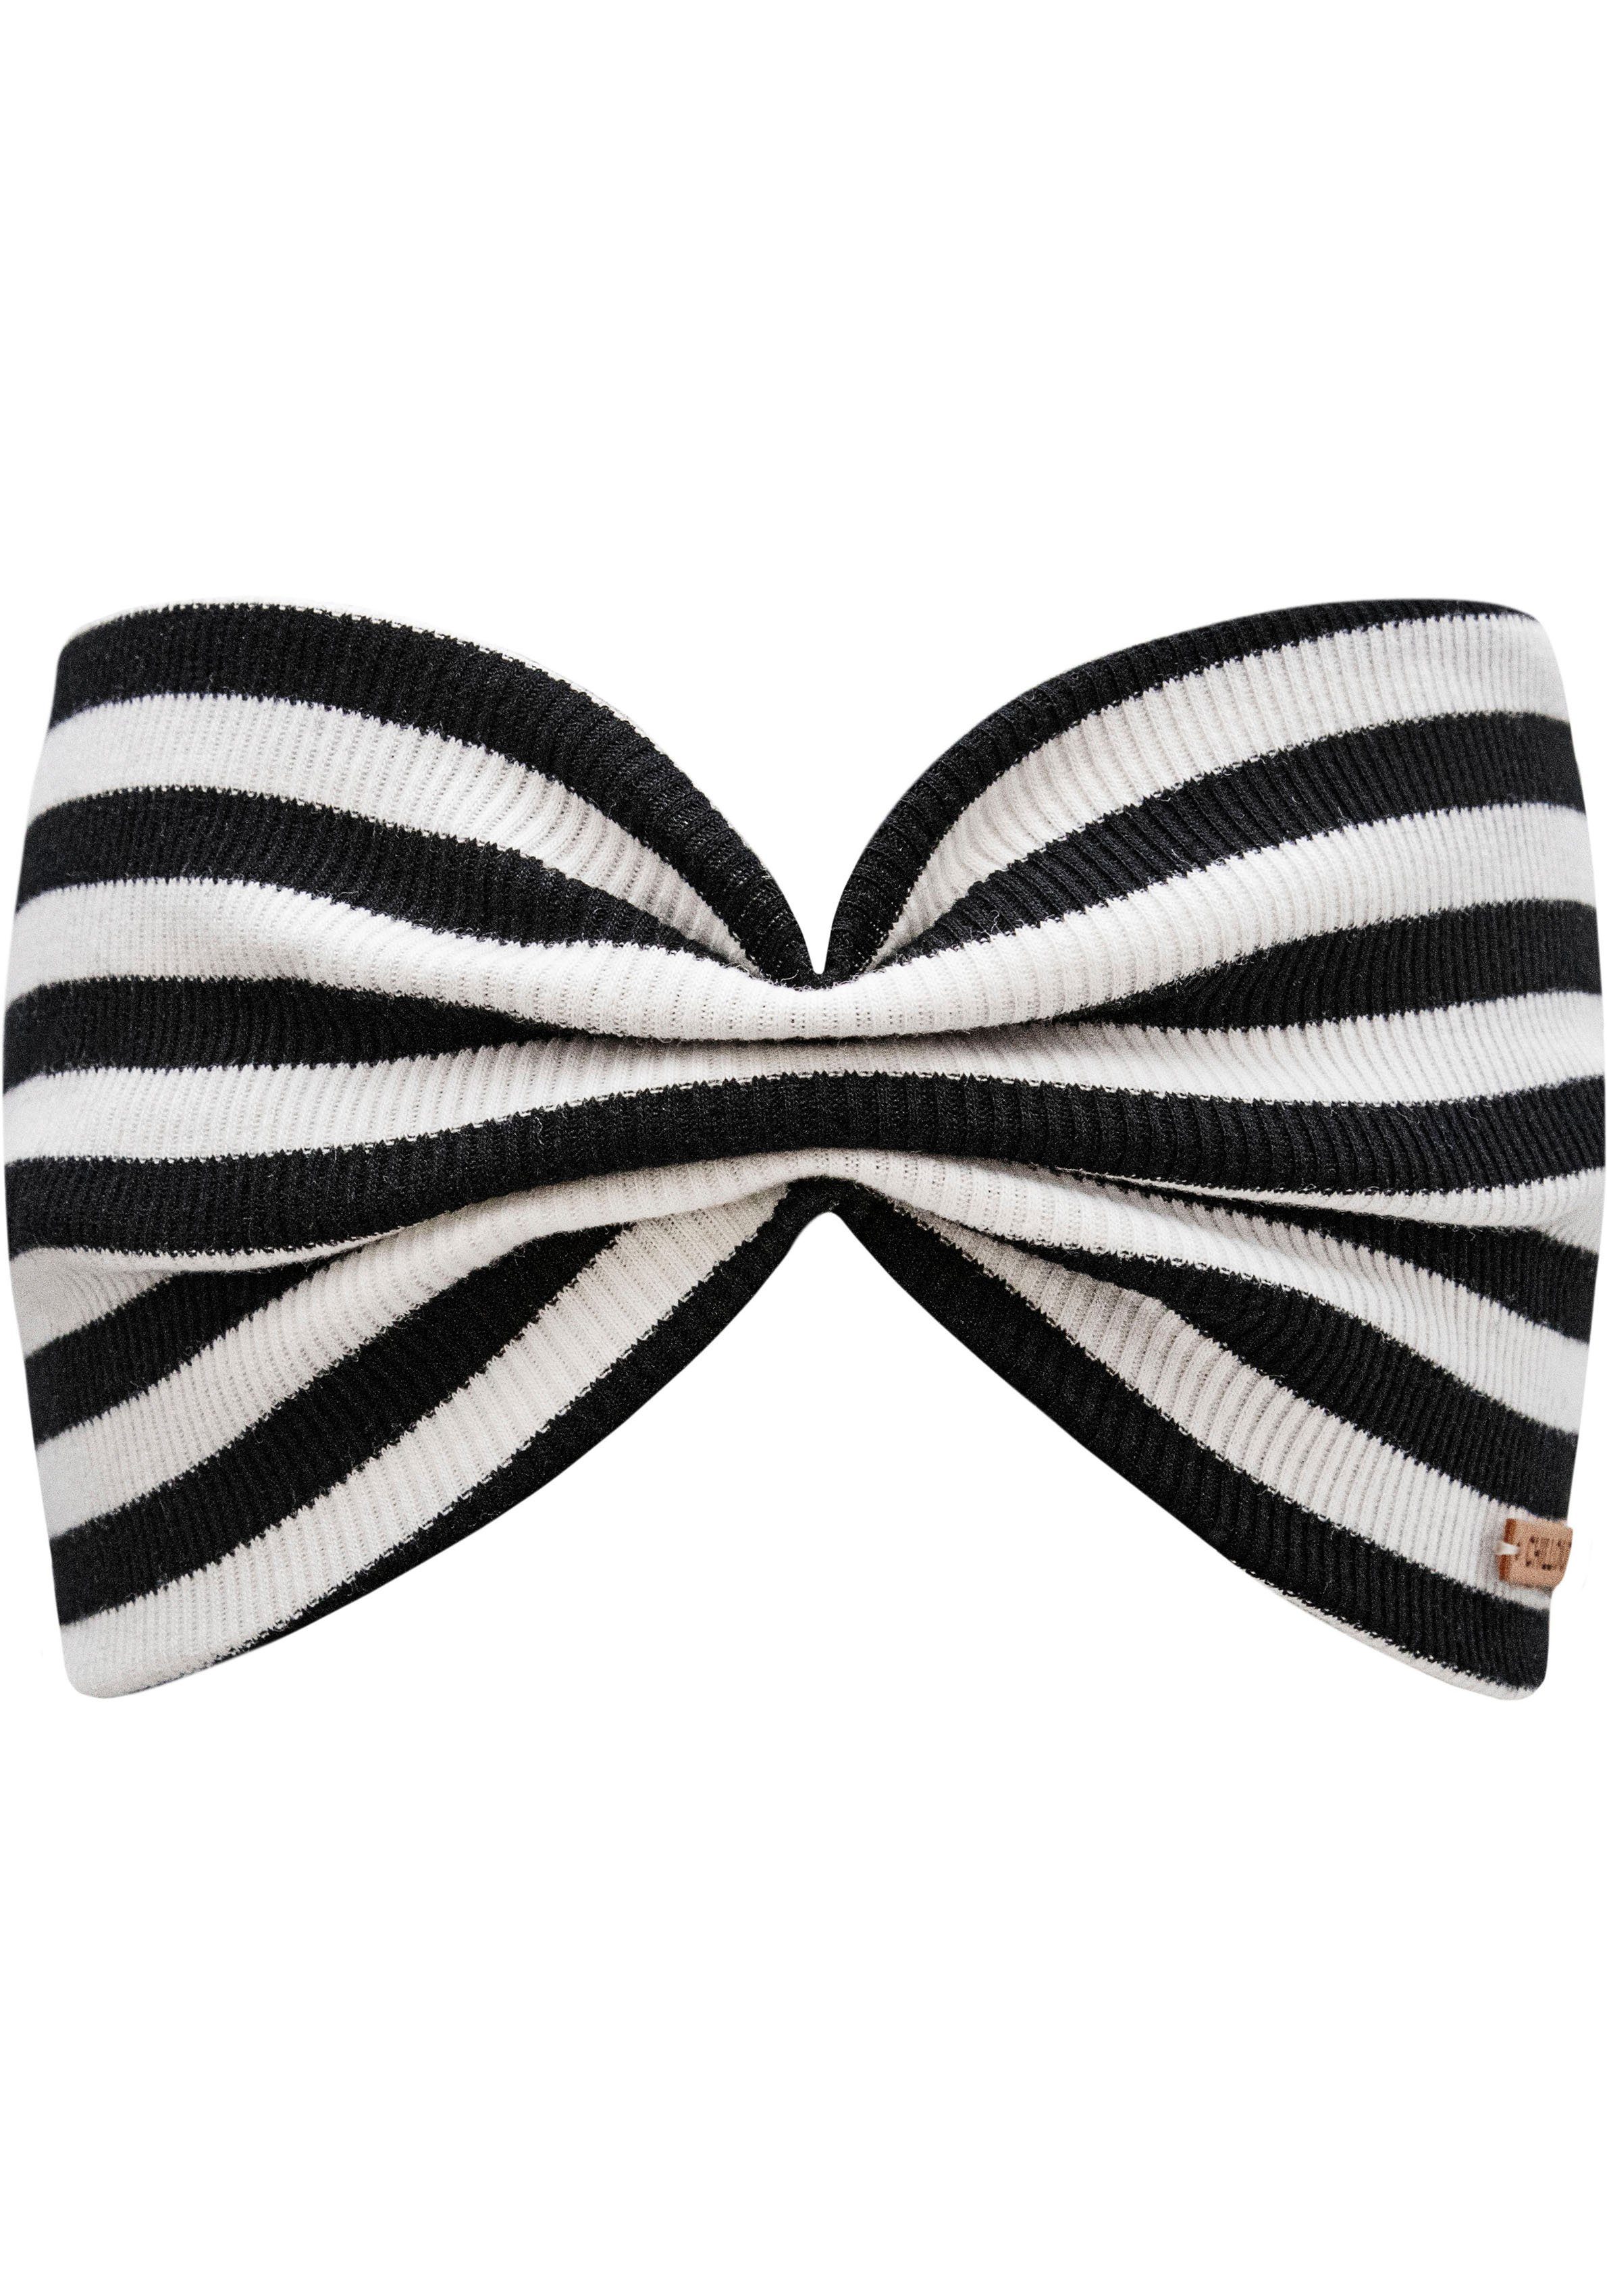 chillouts Stirnband Eilat Headband schwarz weiß | Sommermützen